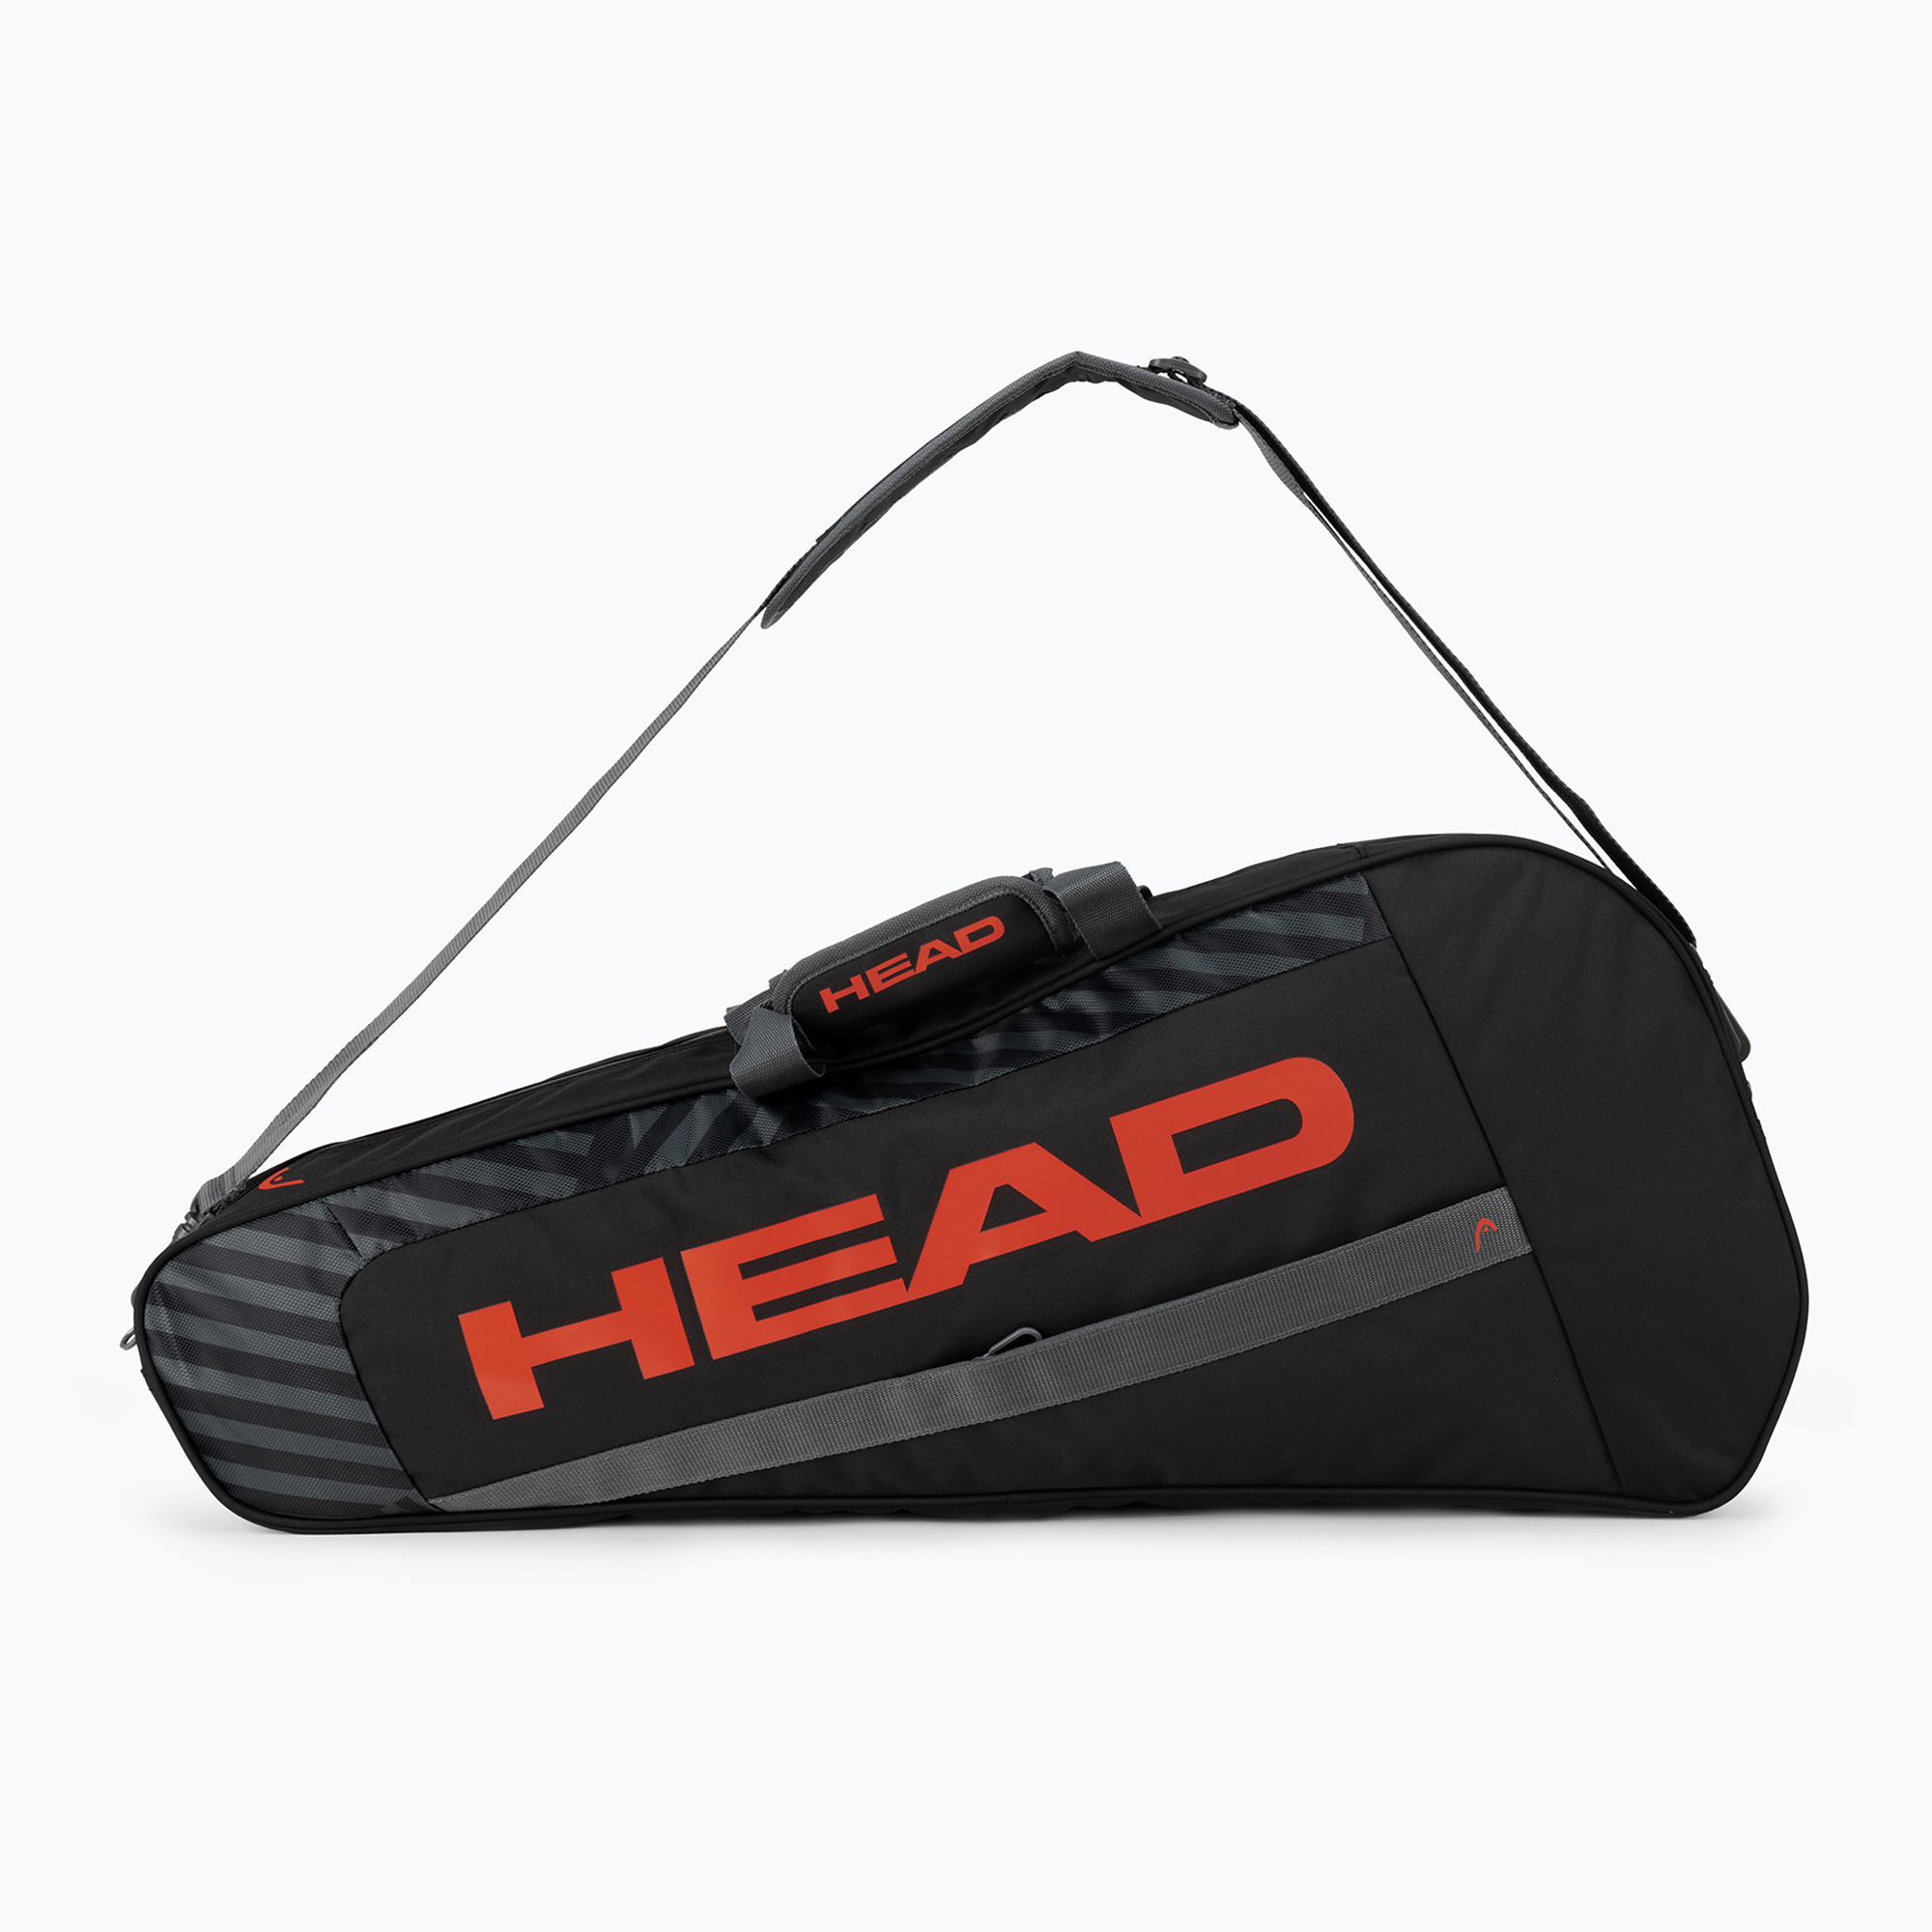 Geantă de tenis HEAD Base S negru-portocaliu 261323